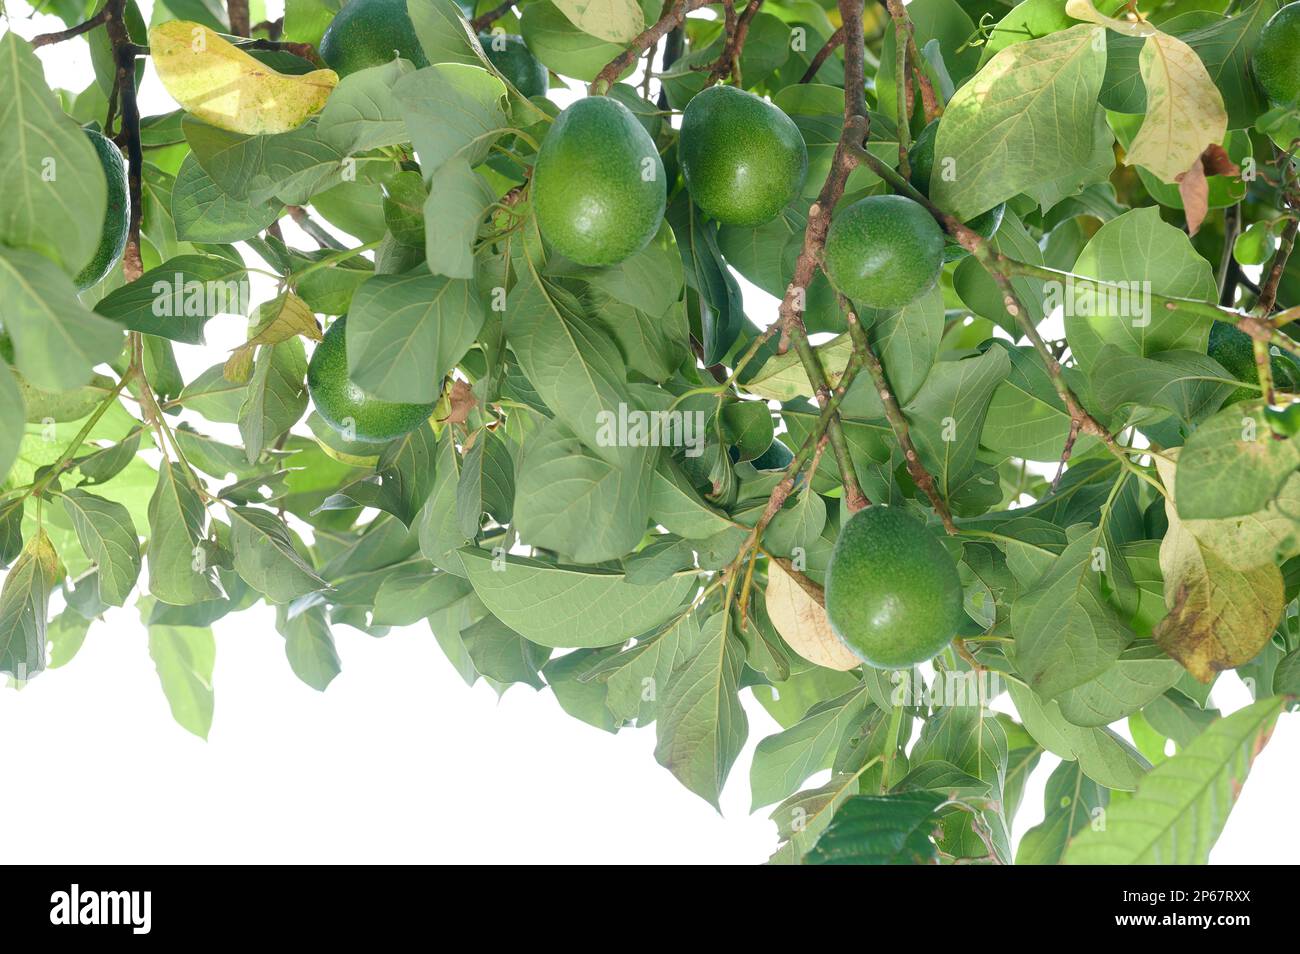 Primo piano del ramo di avocado sullo sfondo verde delle piante a foglia di albero Foto Stock